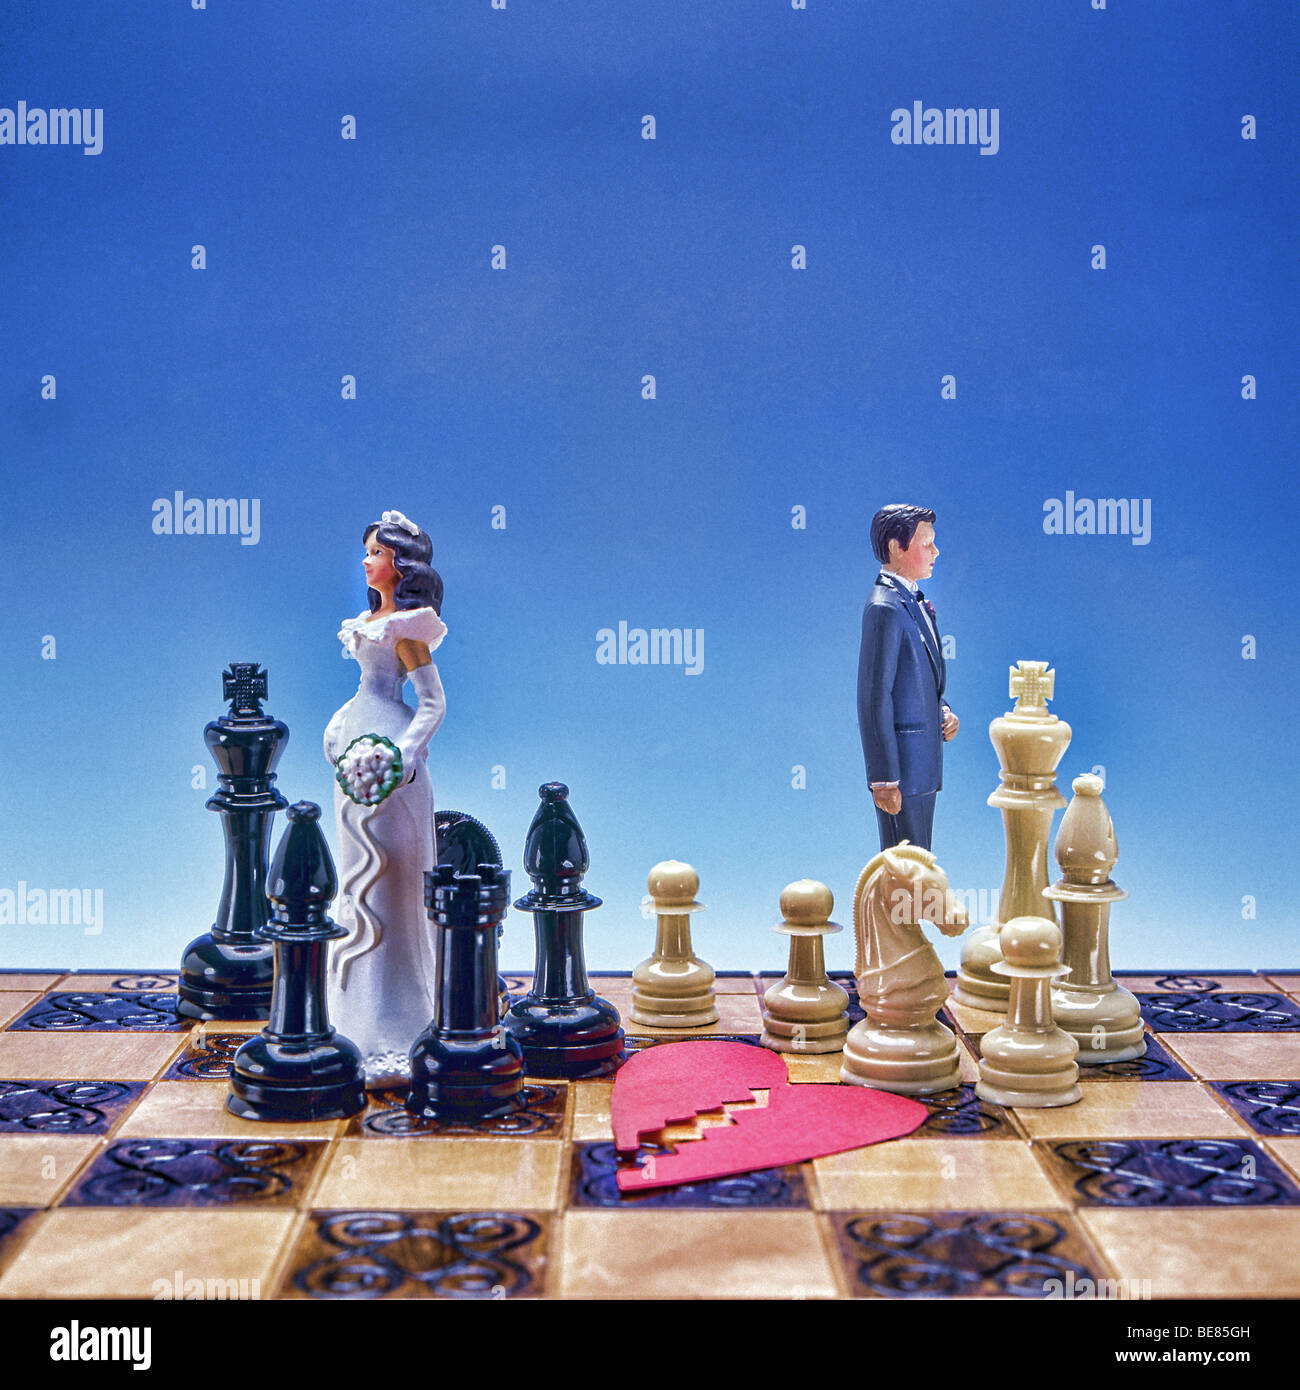 Simbolica rappresentazione del divorzio con la sposa e lo sposo dalla torta nuziale e il cuore spezzato a pezzi separati in divisa Foto Stock